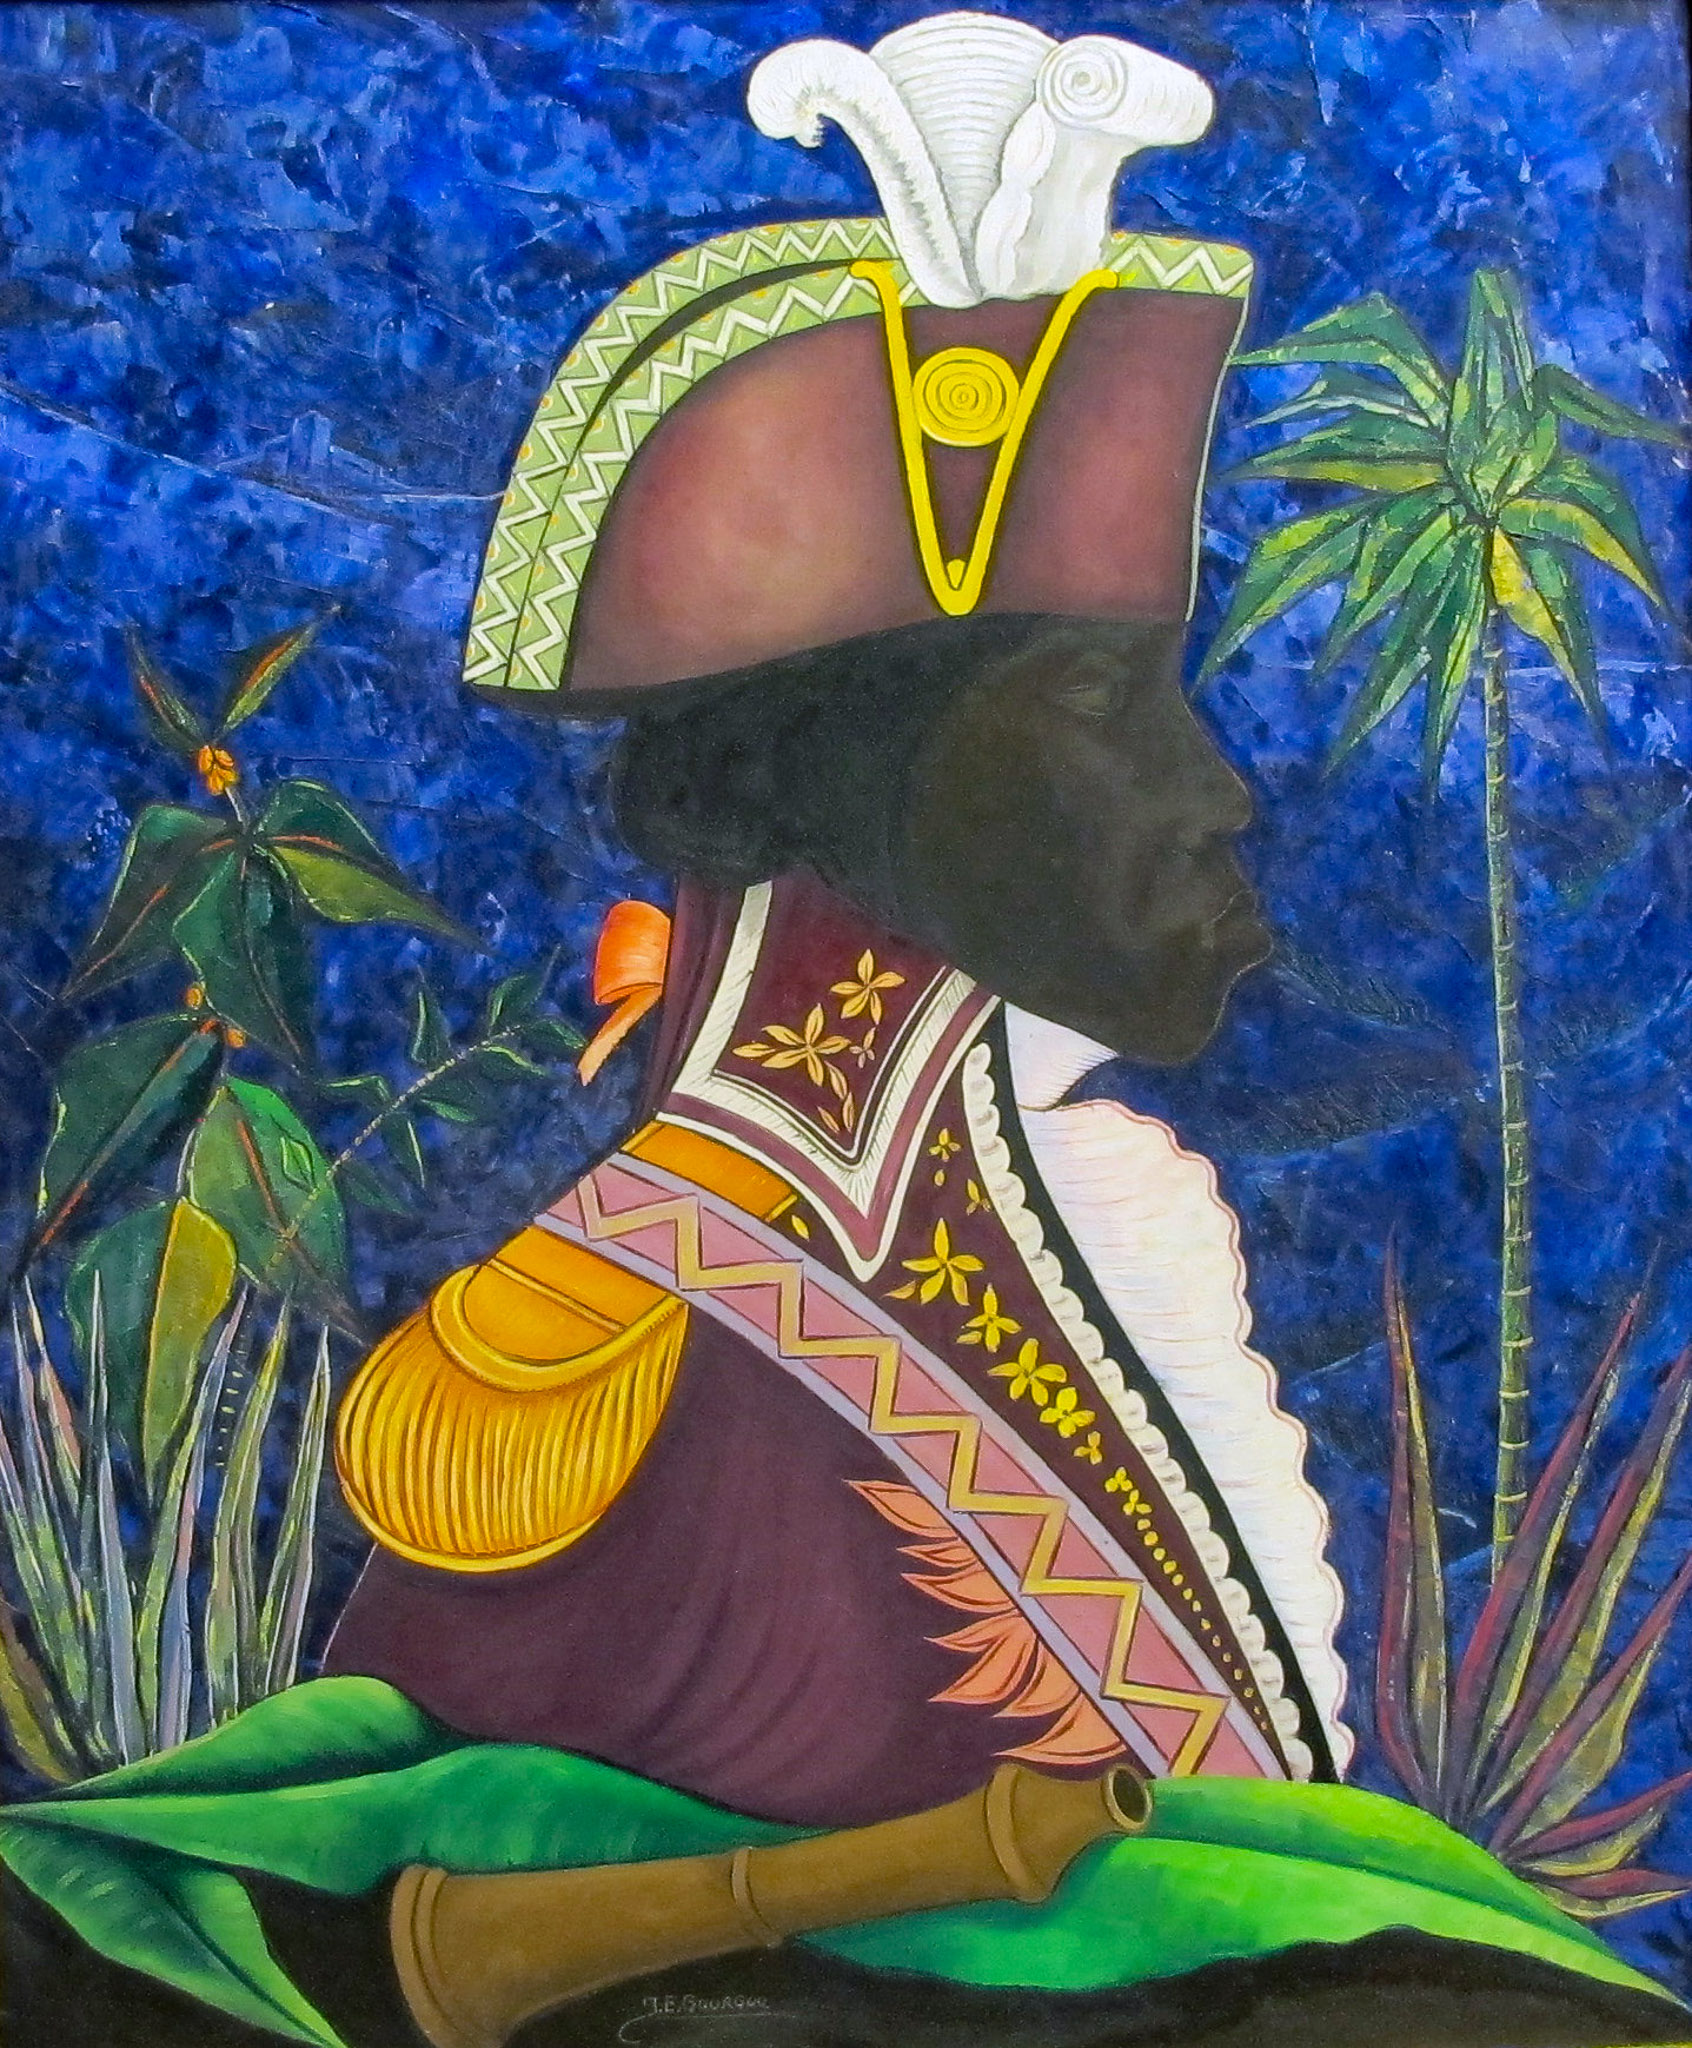 Toussaint Louverture, n.d.